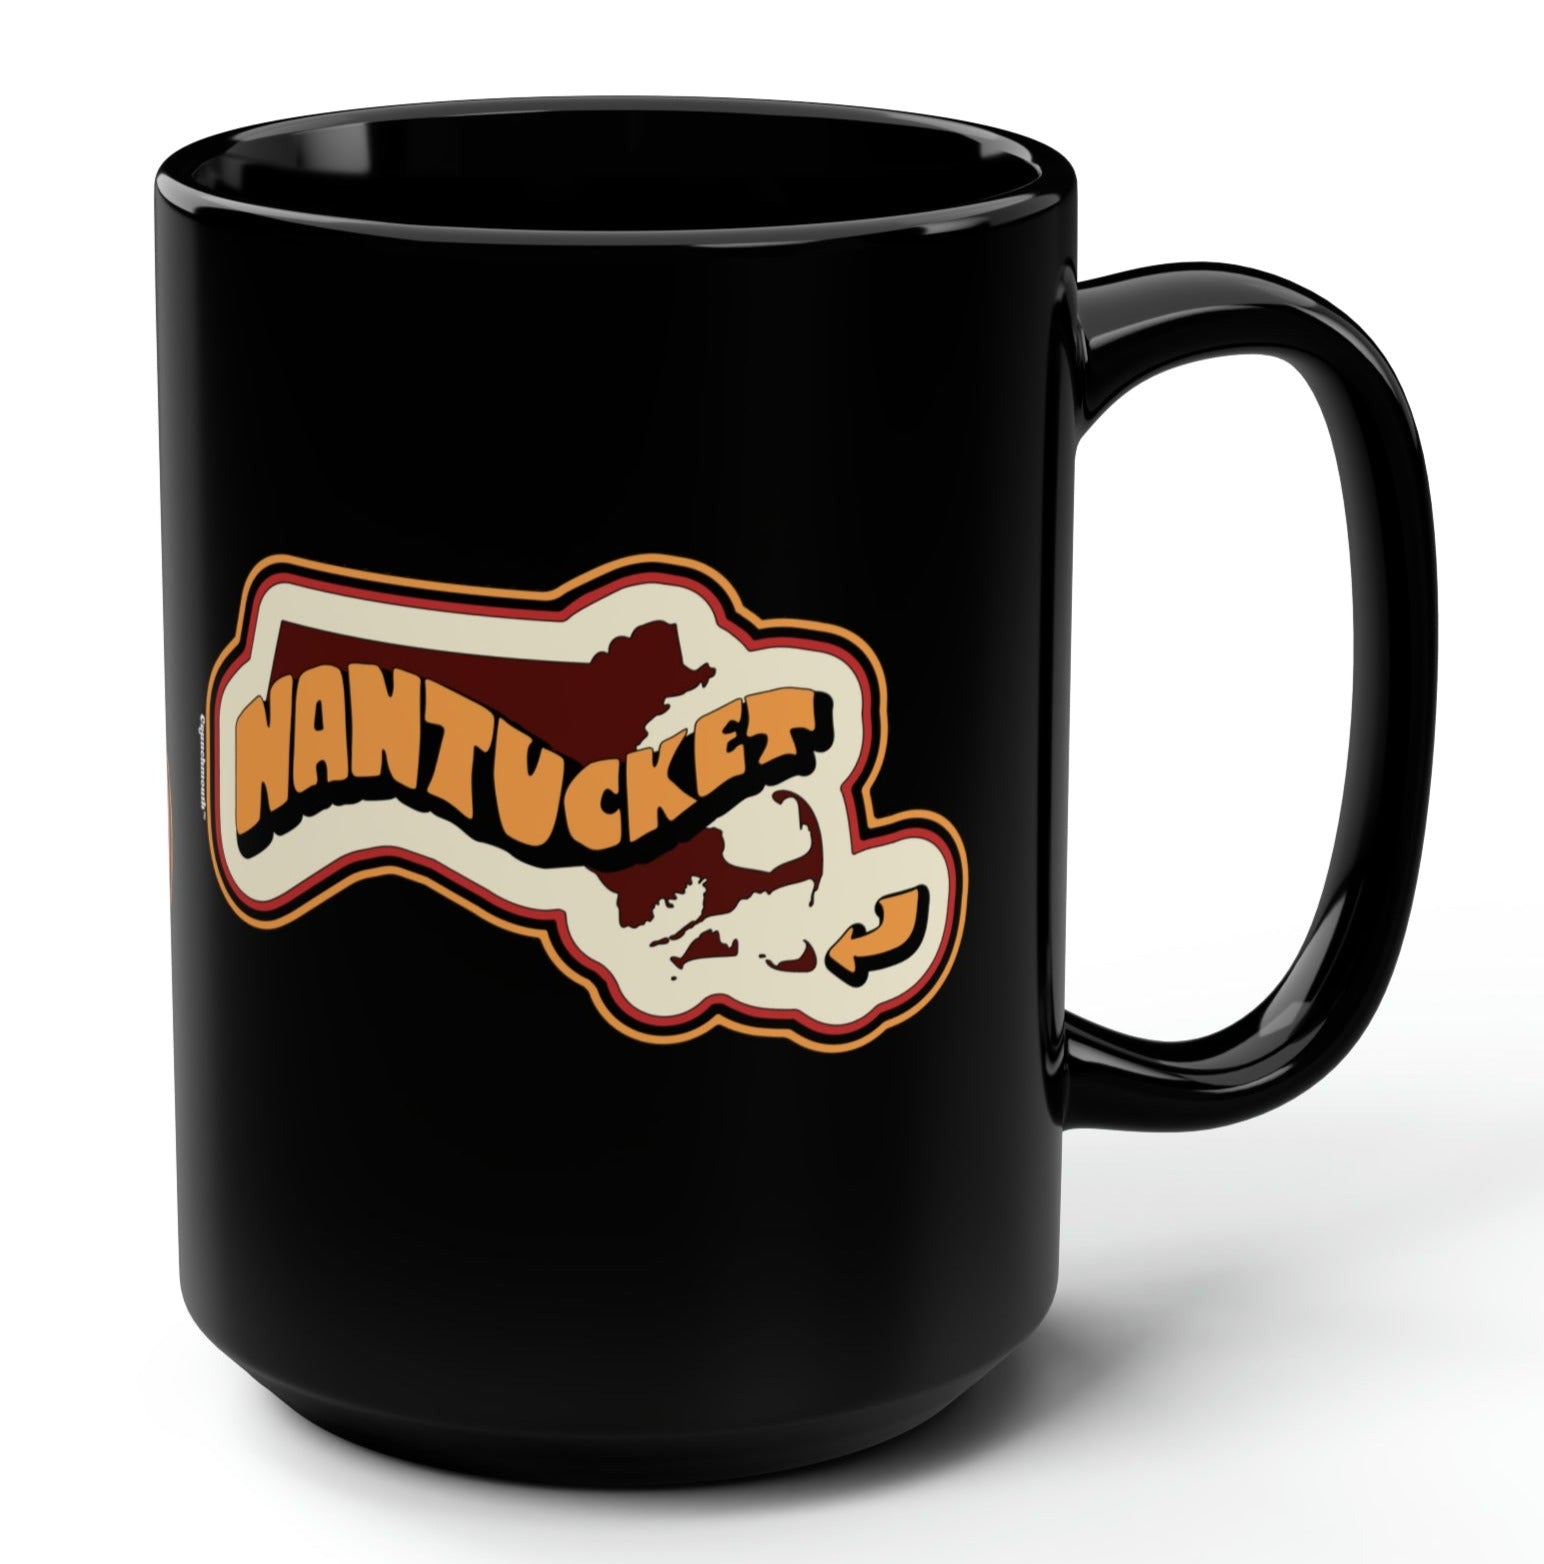 nantucket mass coffee mug context 1